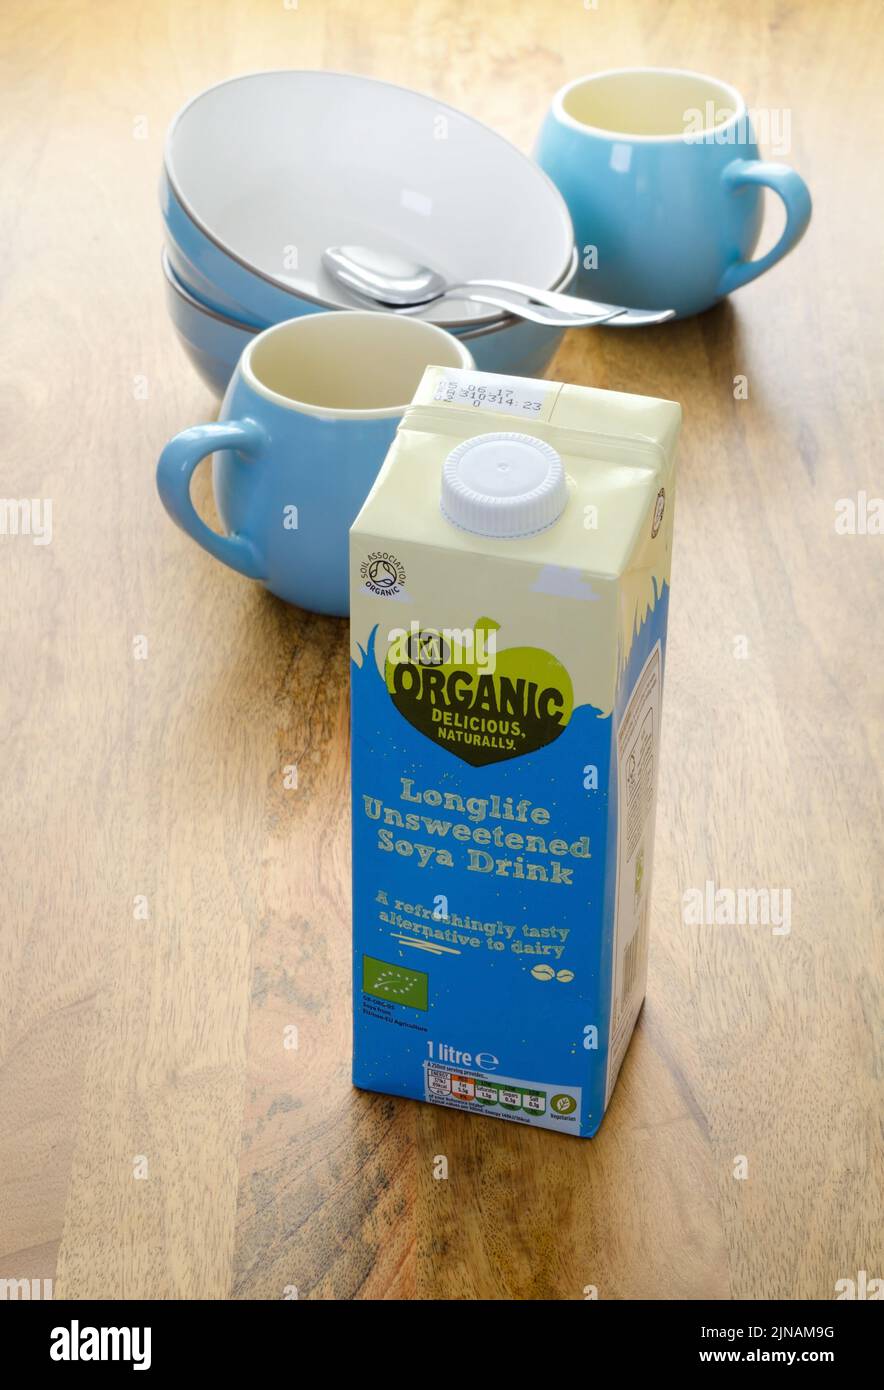 Cartone di Morrisons proprio marchio biologico longlife latte di soia non zuccherato. Il latte di soia è un alte senza latte Foto Stock